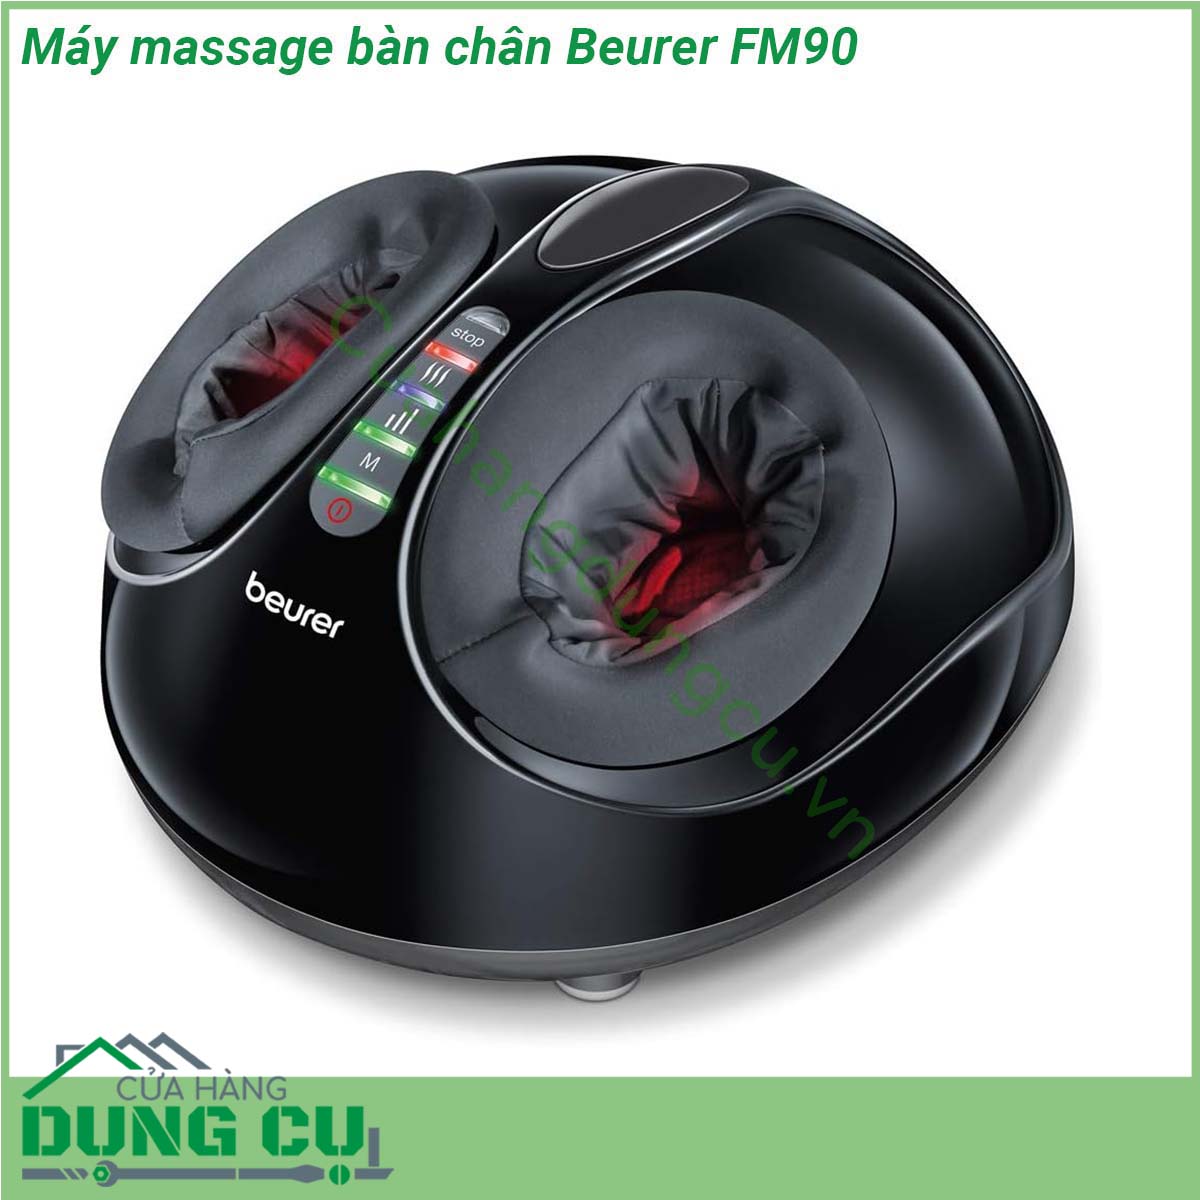 Máy massage bàn chân Beurer FM90 có kiểu dáng gọn gàng dễ sử dụng với hệ thống đèn LED giúp bạn quan sát dễ dàng các chức năng đang hoạt động vỏ máy có thể dễ dàng tháo rời để giặt sạch định kì đảm bảo vệ sinh Bên cạnh đó phần đặt bàn chân vừa vặn với cỡ giày 46 vì vậy mọi người trong gia đình đều có thể sử dụng  Máy massage này sẽ giúp kích thích tuần hoàn máu thúc đẩy tái tạo tế bào mới thư giãn các cơ bị căng cũng như tăng cường sức khỏe và độ dẻo dai cho đôi chân nâng cao sức khỏe cho bạn